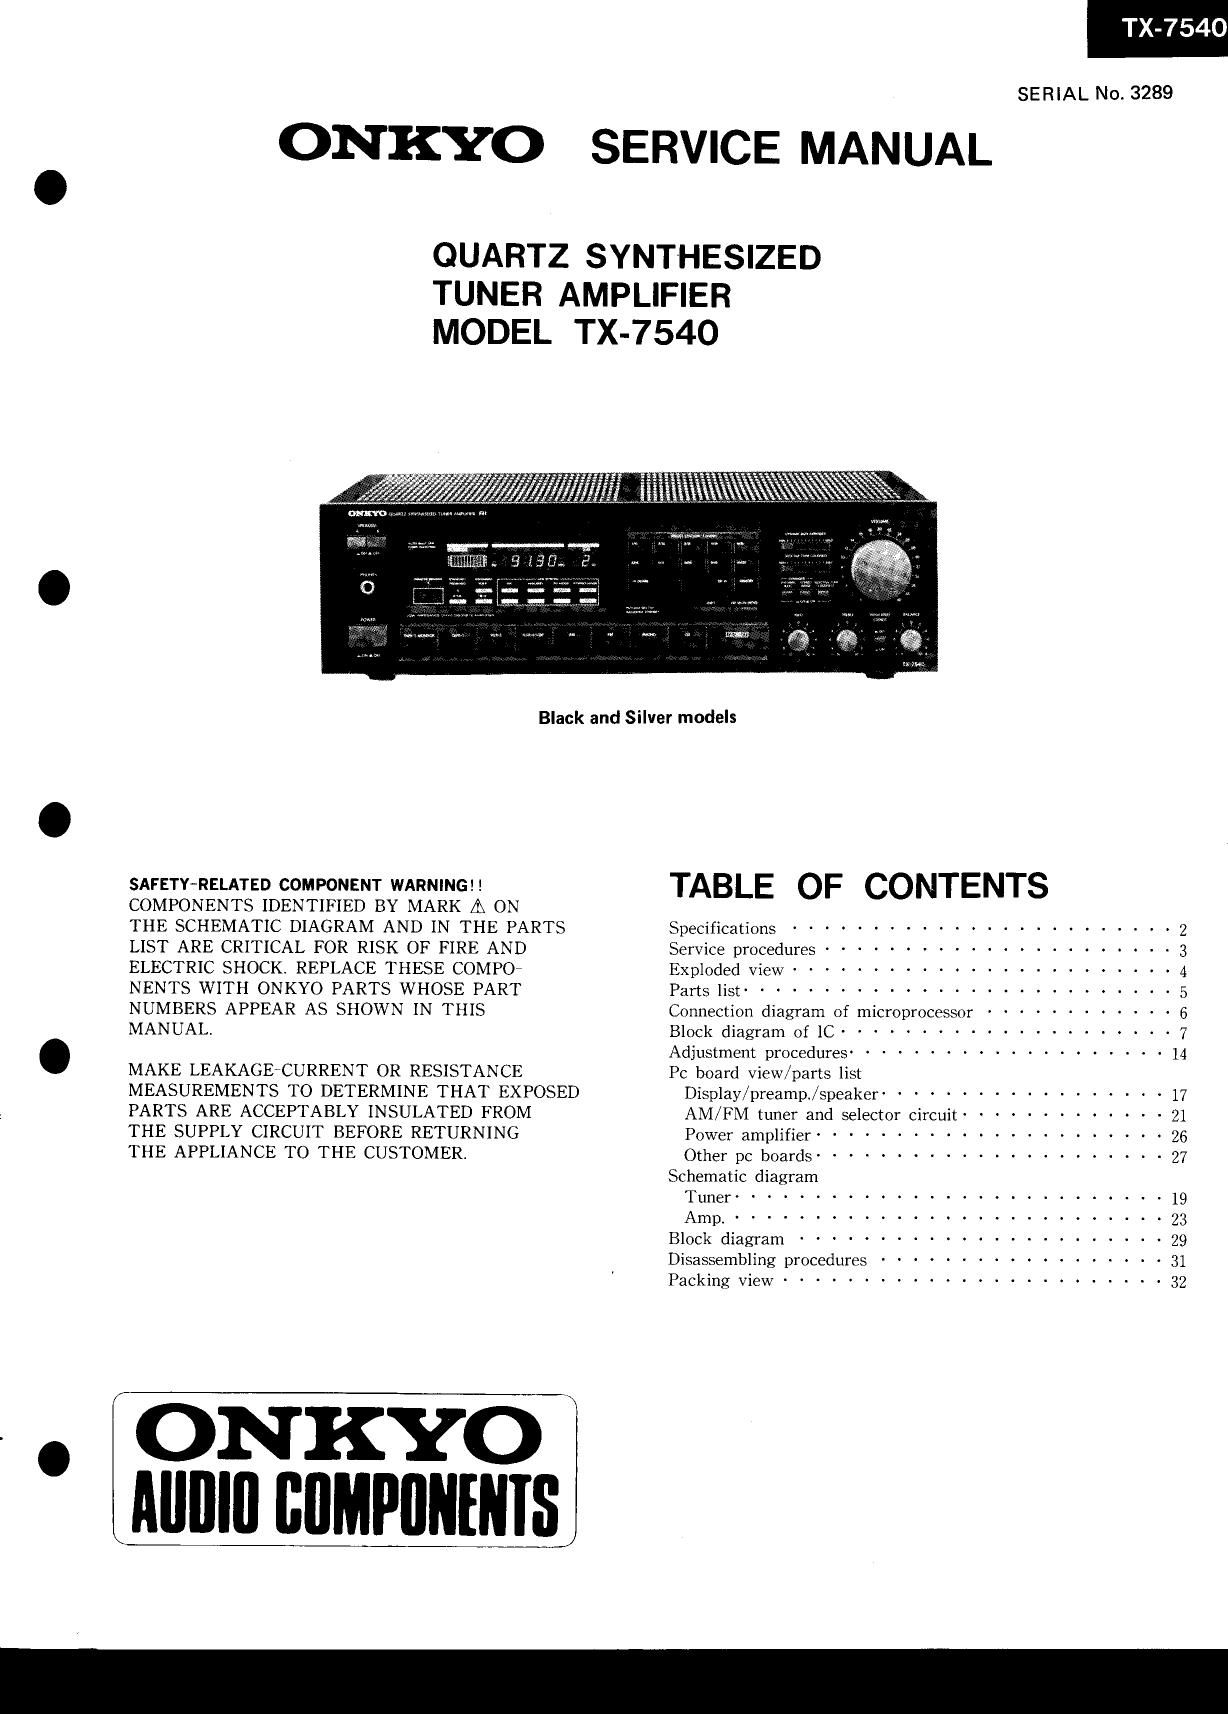 Onkyo TX 7540 Service Manual